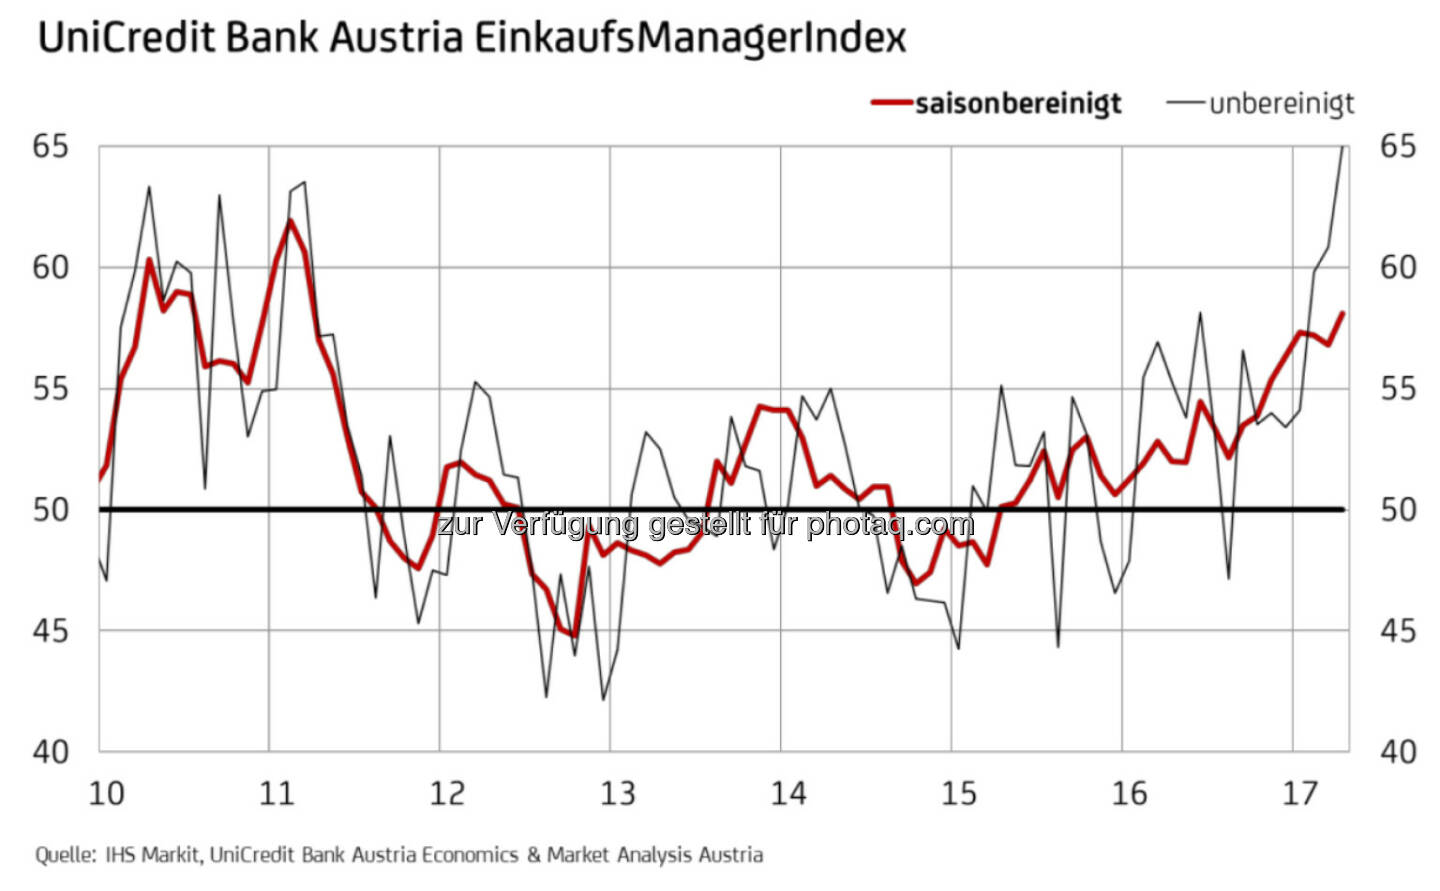 UniCredit Bank Austria EinkaufsManagerindex April 2017 - Industrie in Österreich mit stärkstem Wachstum seit sechs Jahren (Fotocredit: UniCredit Bank Austria)